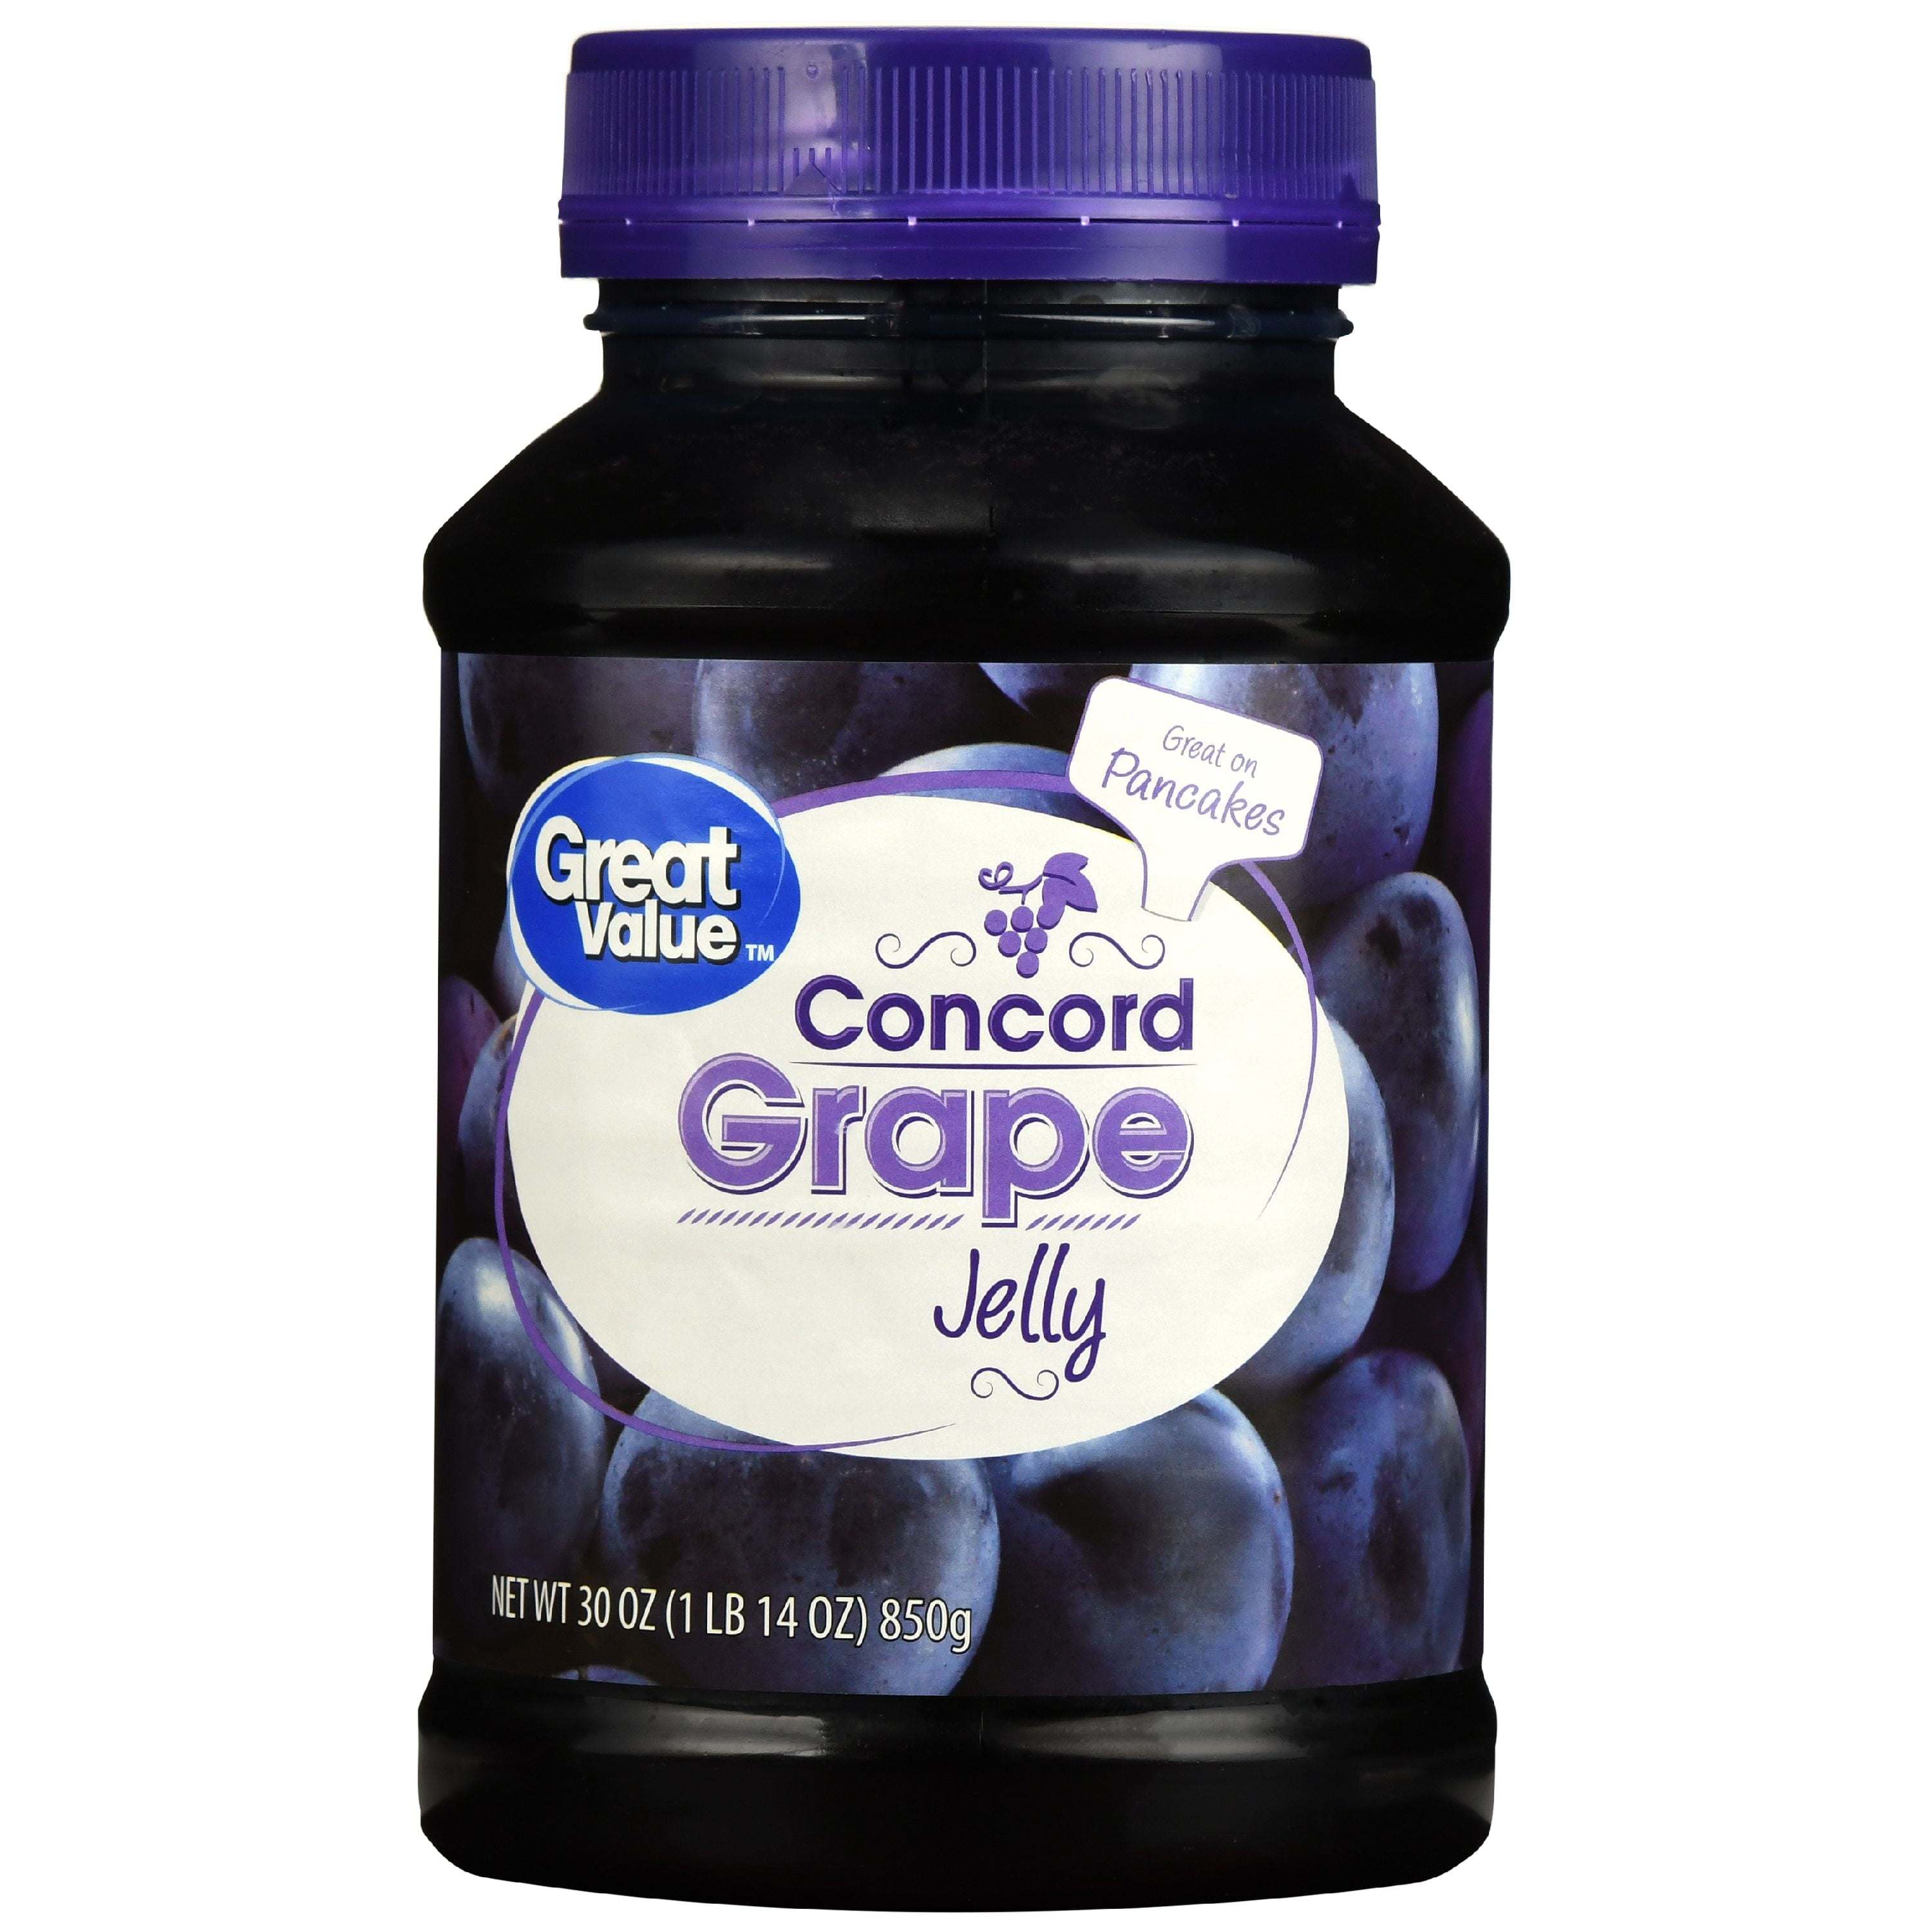 Great Value Concord Grape Jelly, 30 oz - Walmart.com.